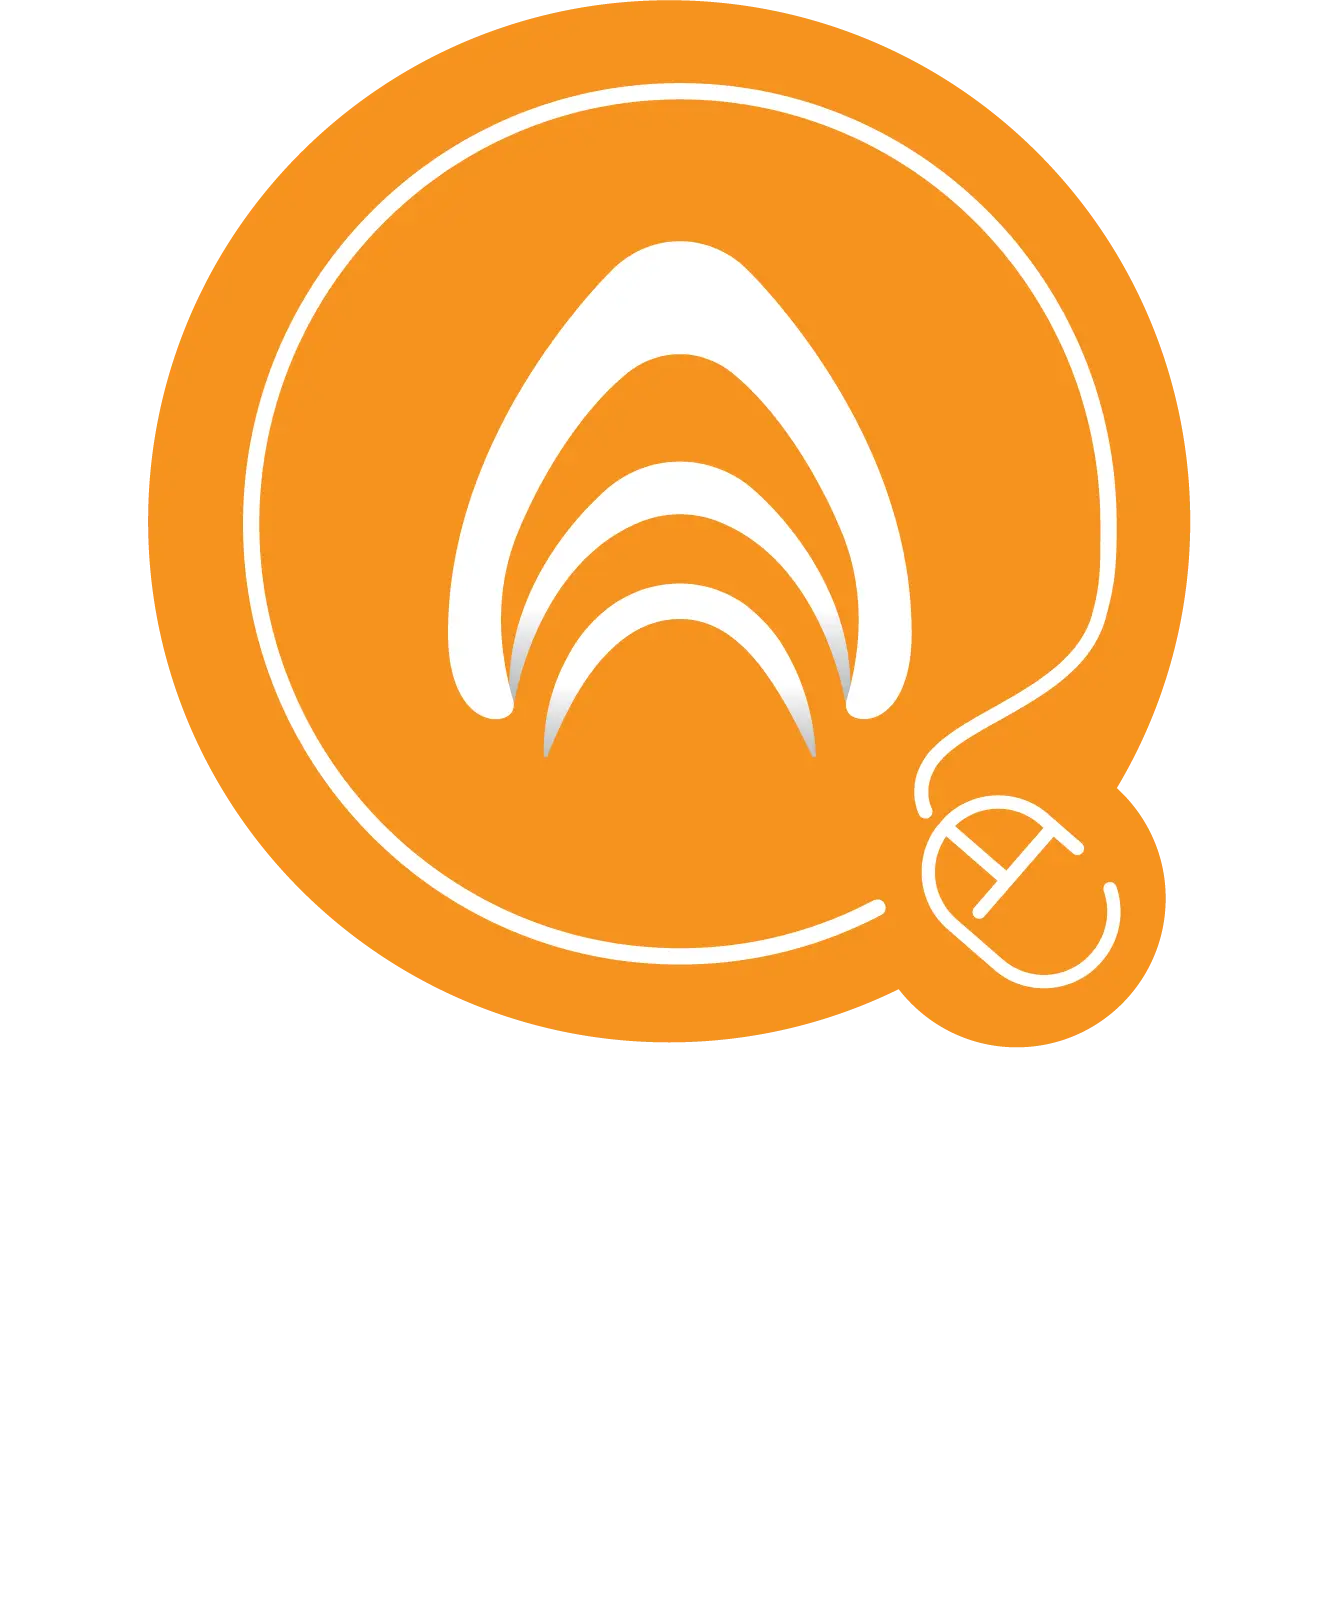 Apollo elogistics